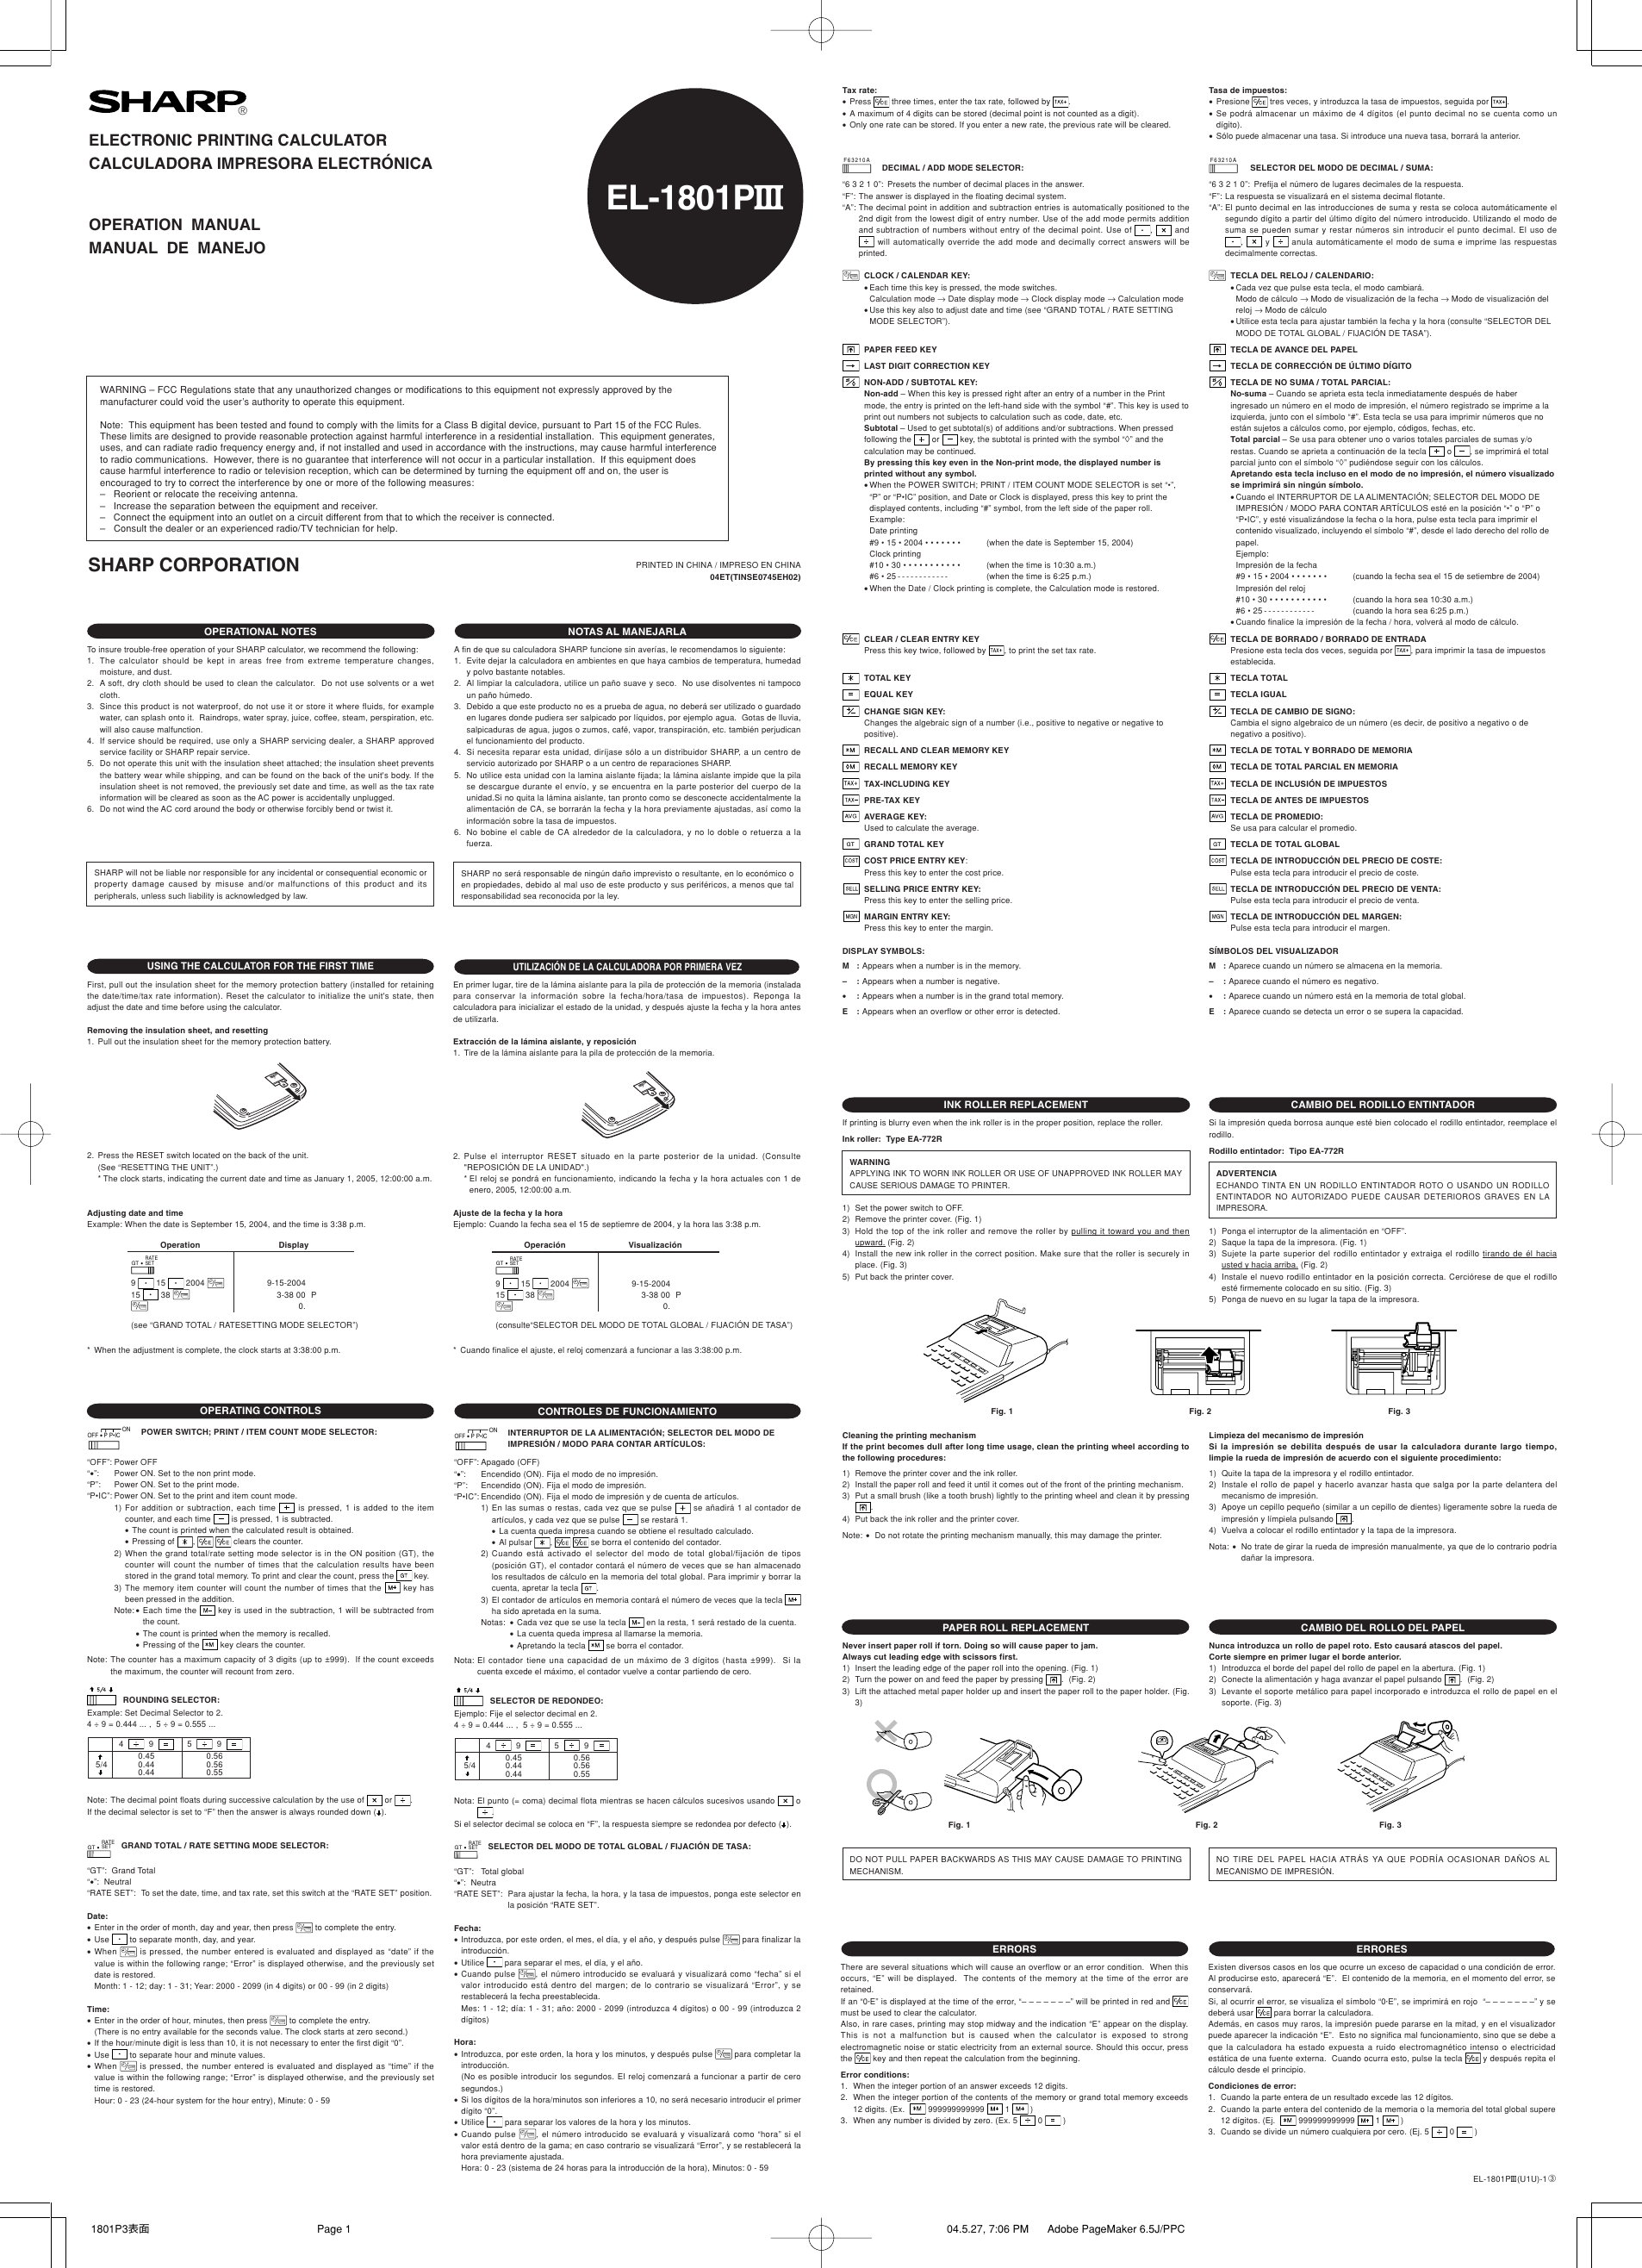 Page 1 of 2 - Sharp El-1801Piii-Operation-Manual EL-1801PIII Operation Manual